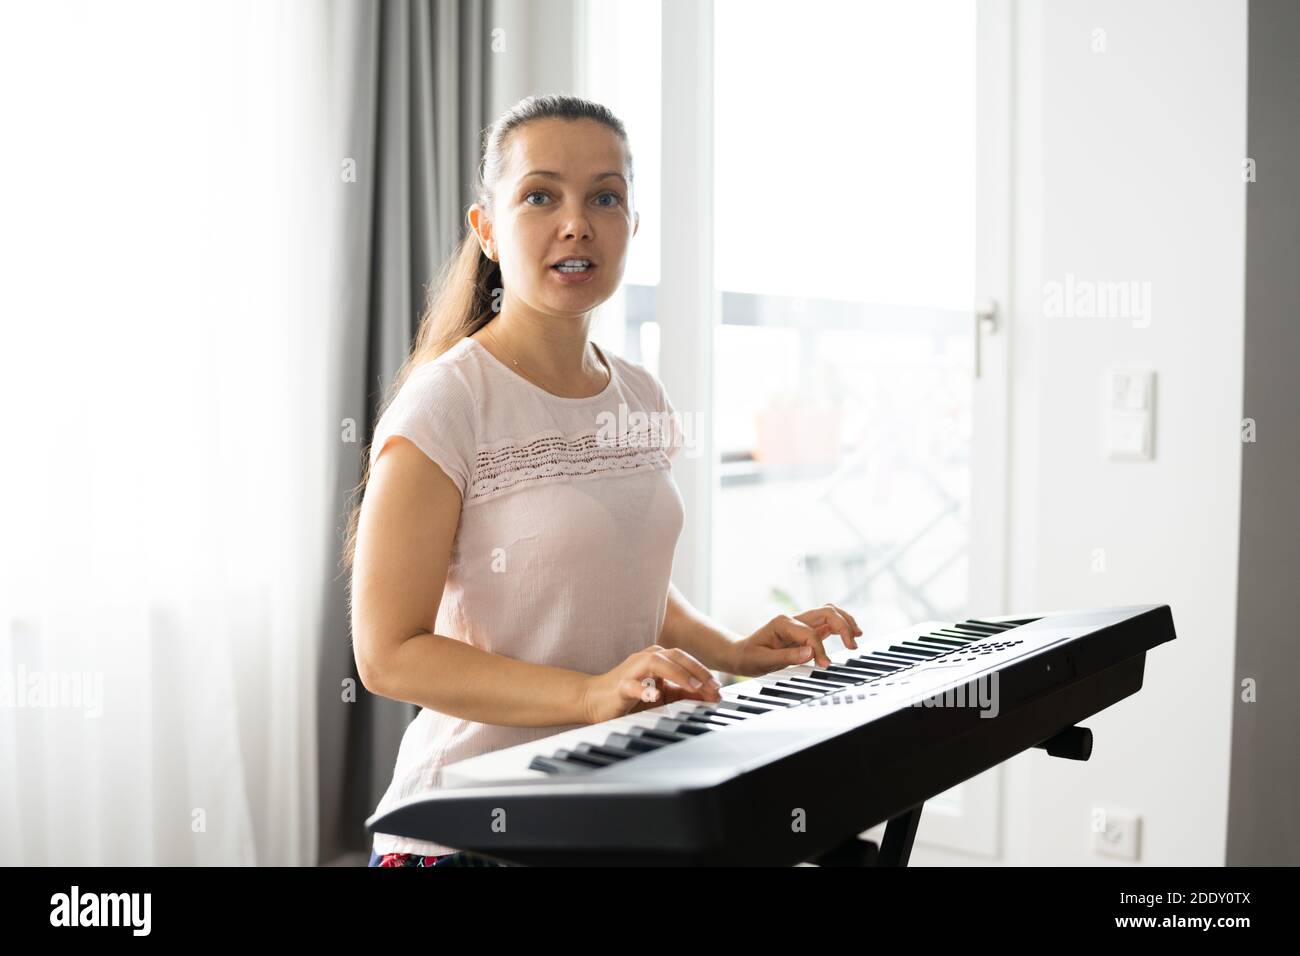 Mujer tocando el instrumento de piano de teclado de música en casa Foto de stock